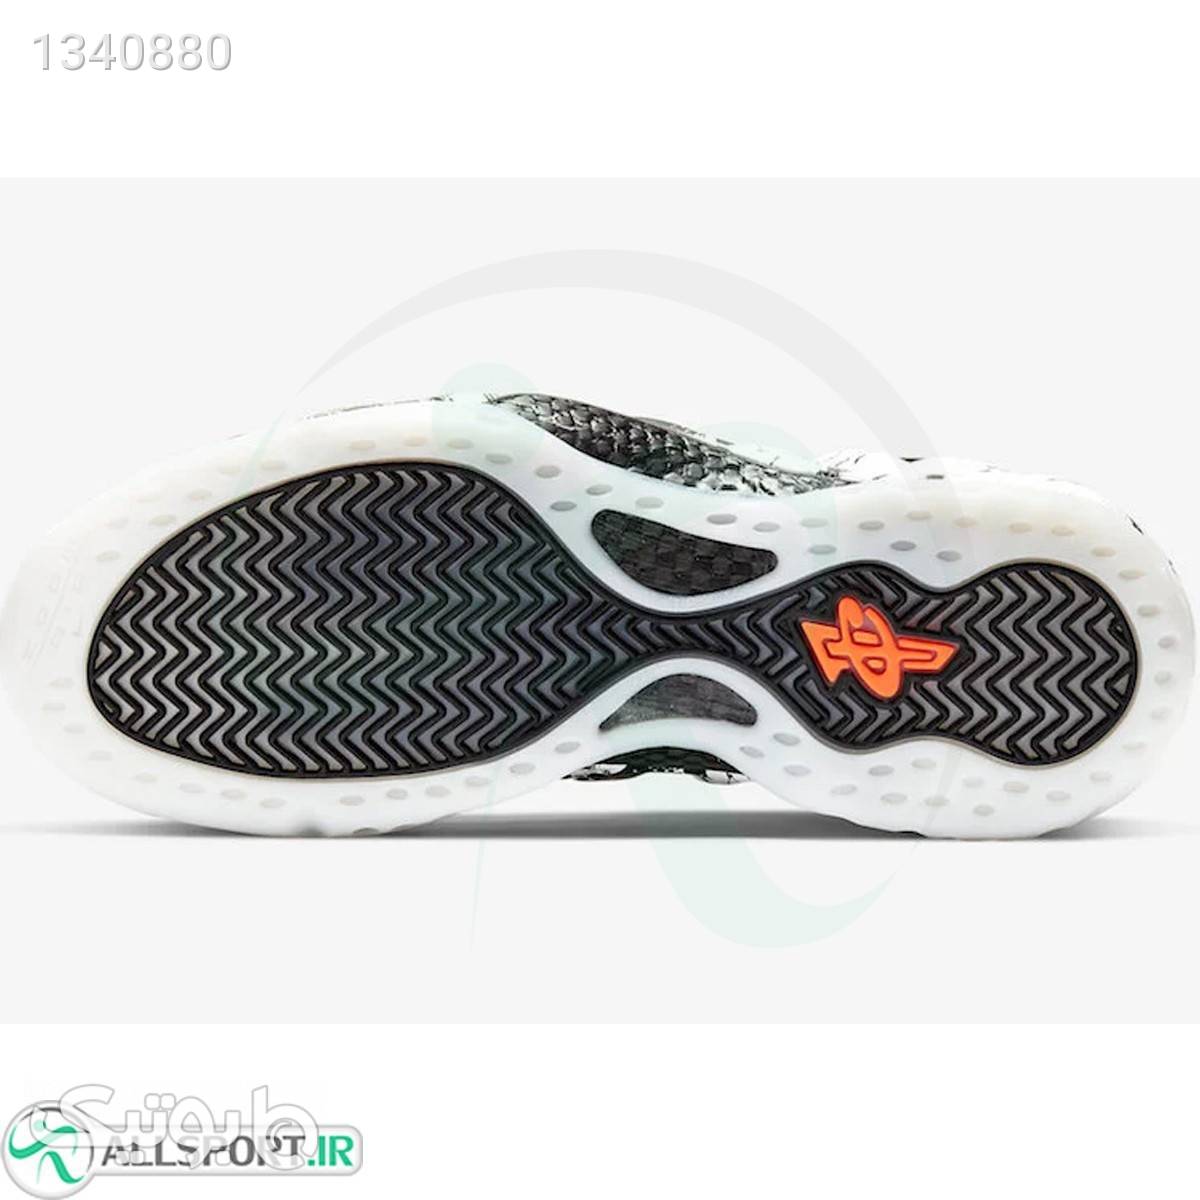 کفش بسکتبال نایک Nike Air Foamposite One